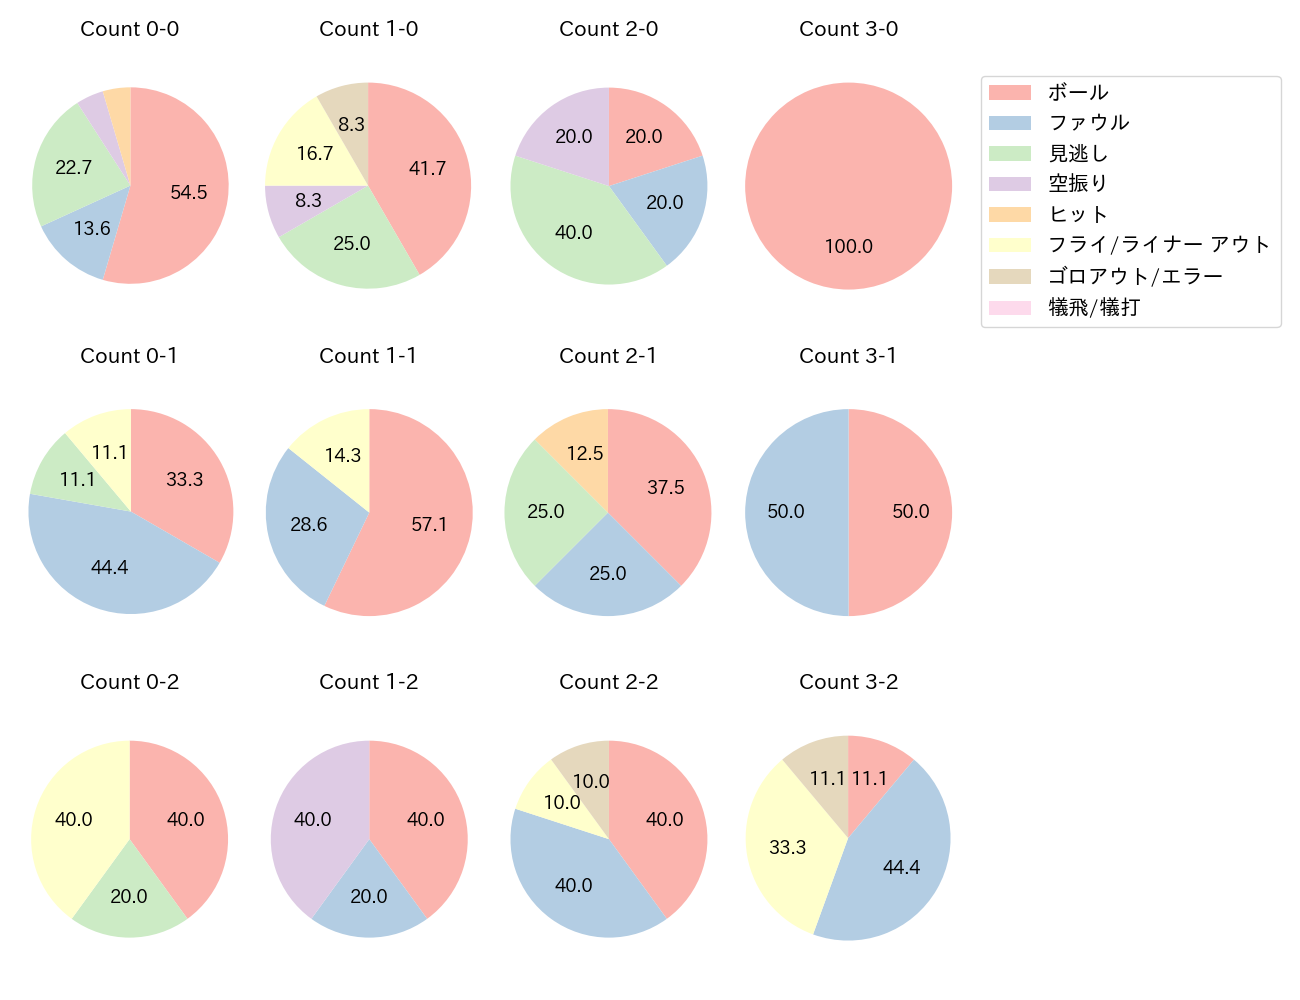 坂本 誠志郎の球数分布(2022年6月)